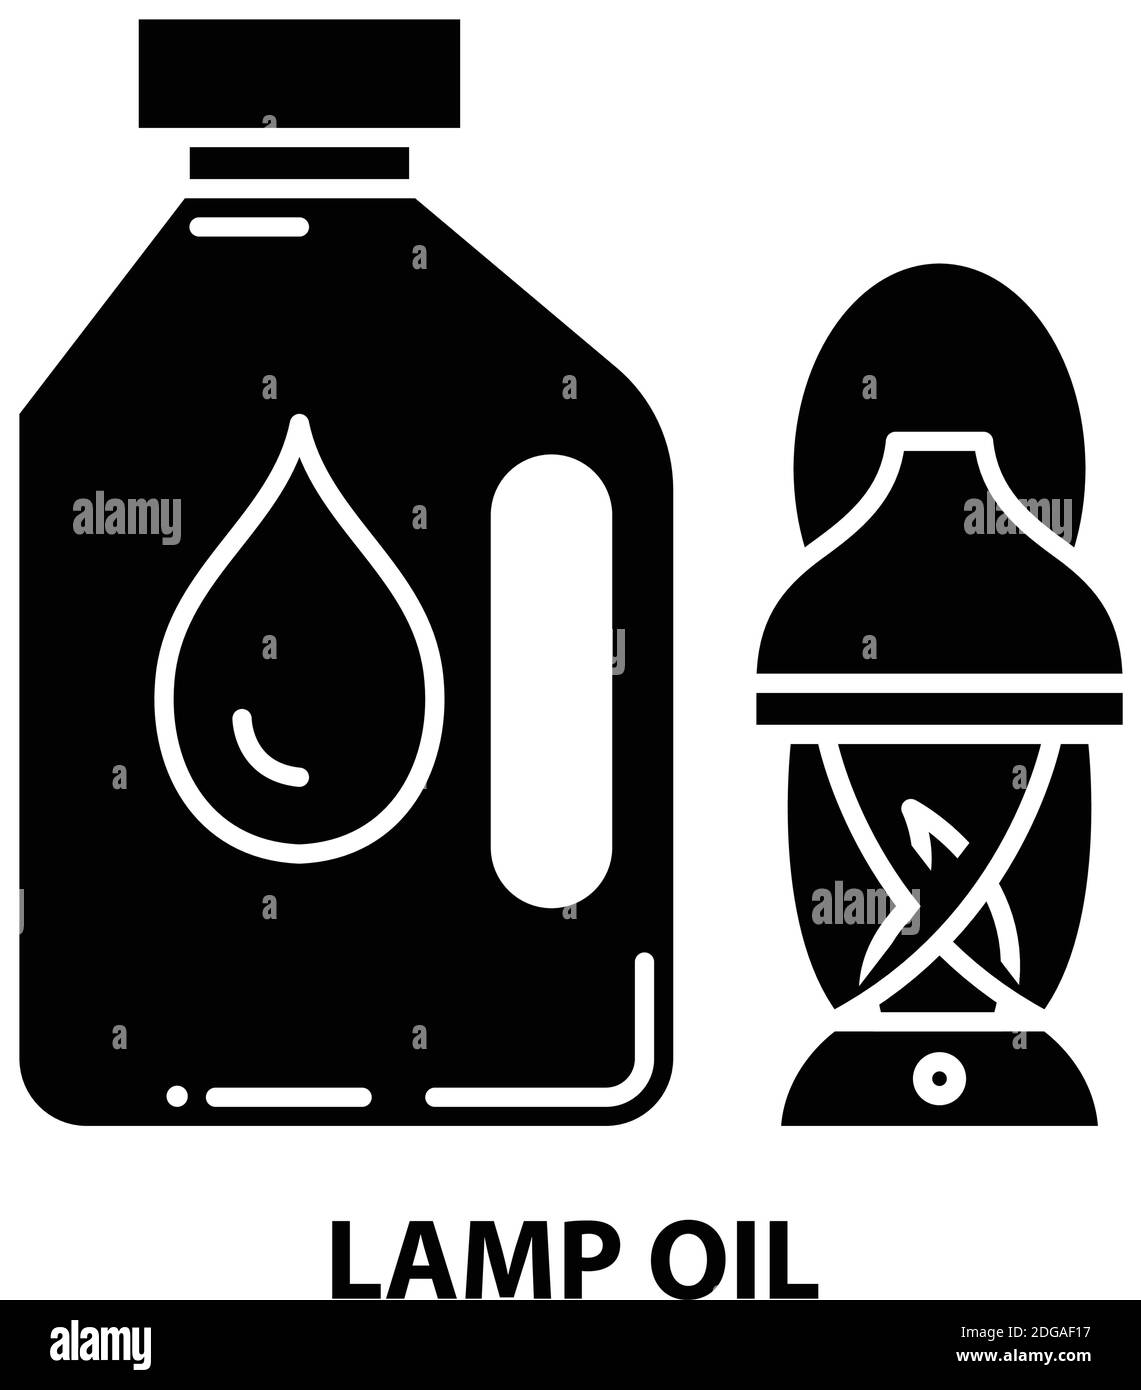 Lampenöl-Symbol, schwarzes Vektorzeichen mit bearbeitbaren Striche, Konzeptdarstellung Stock Vektor